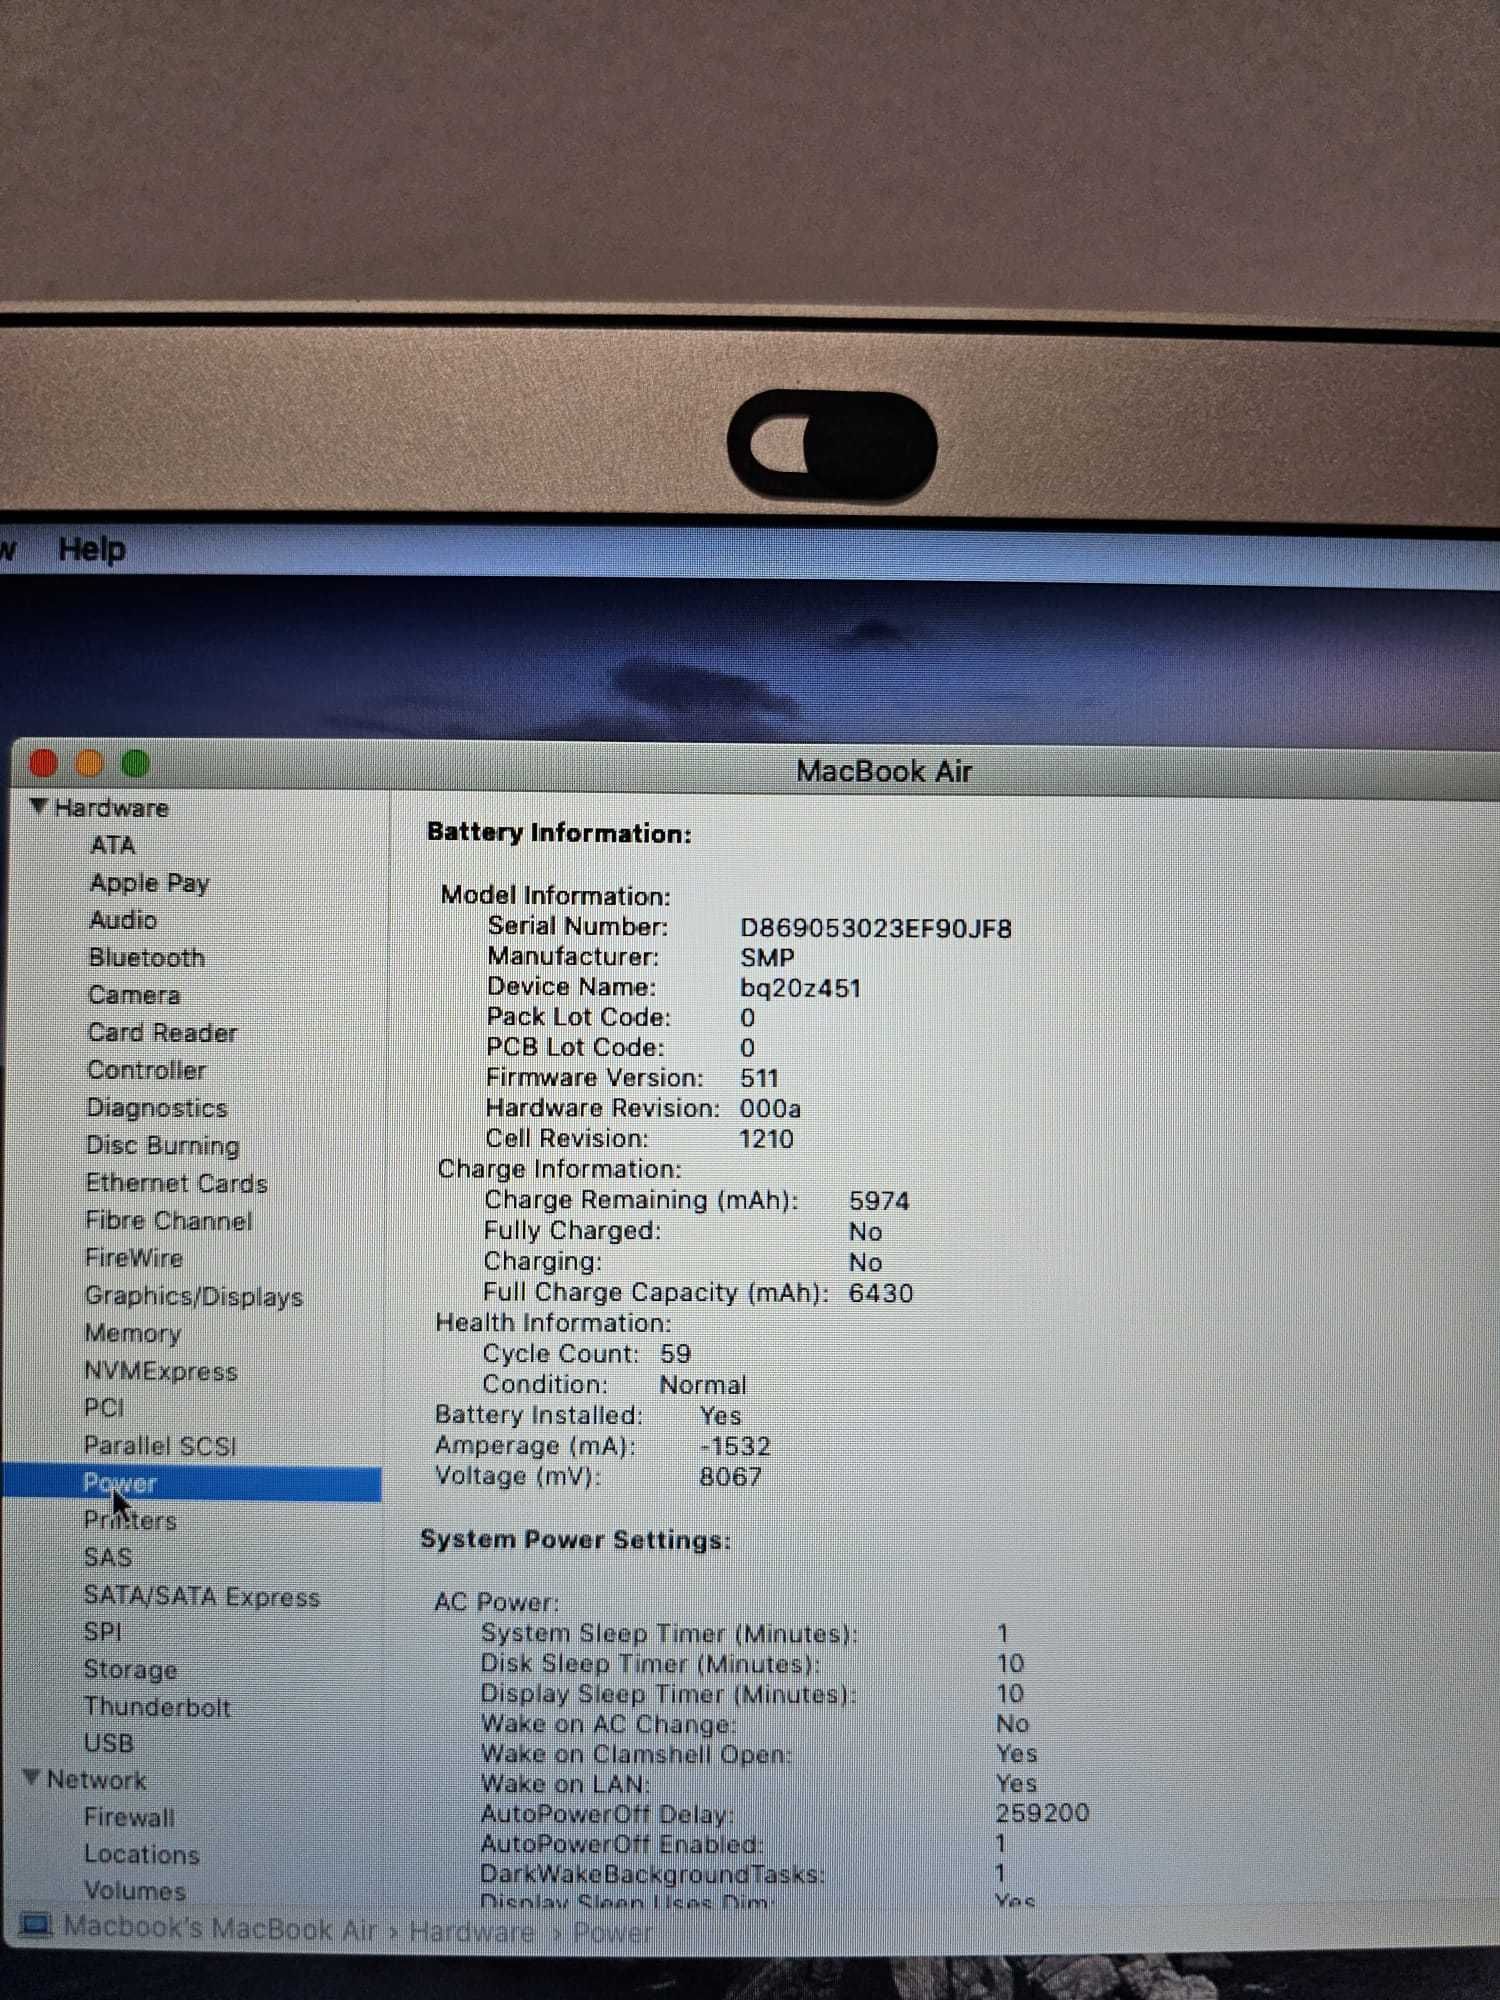 Macbook Air 13 2017, i5 1.8 GHz, 8GB RAM, 960GB SSD, fabricat in 2019